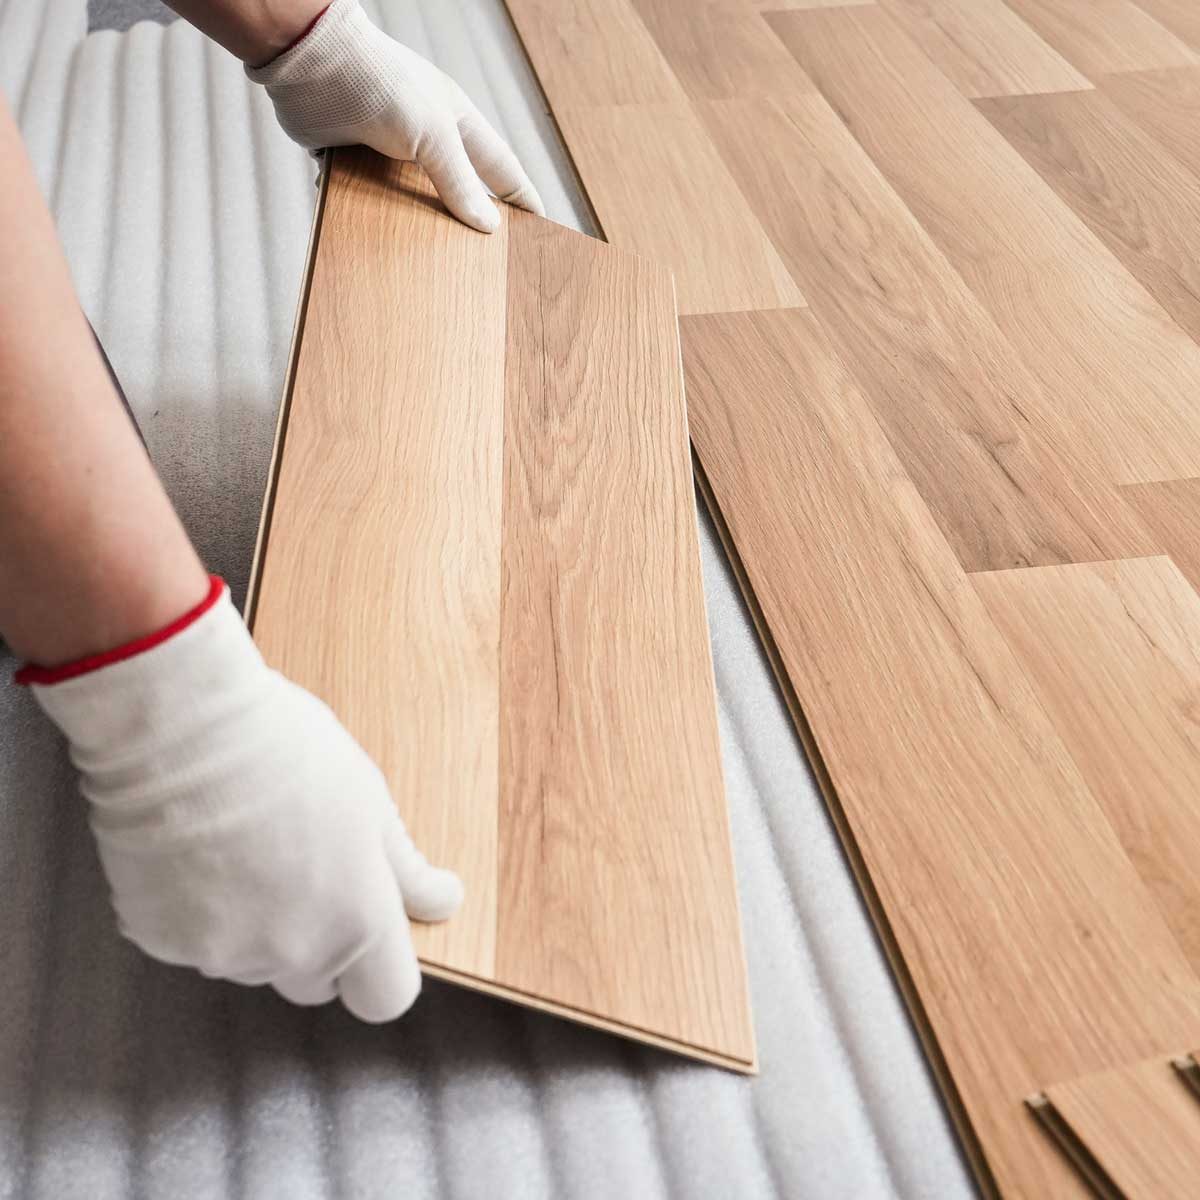 hướng dẫn lắp đặt sàn gỗ công nghiệp đơn giản theo 3 bước 1